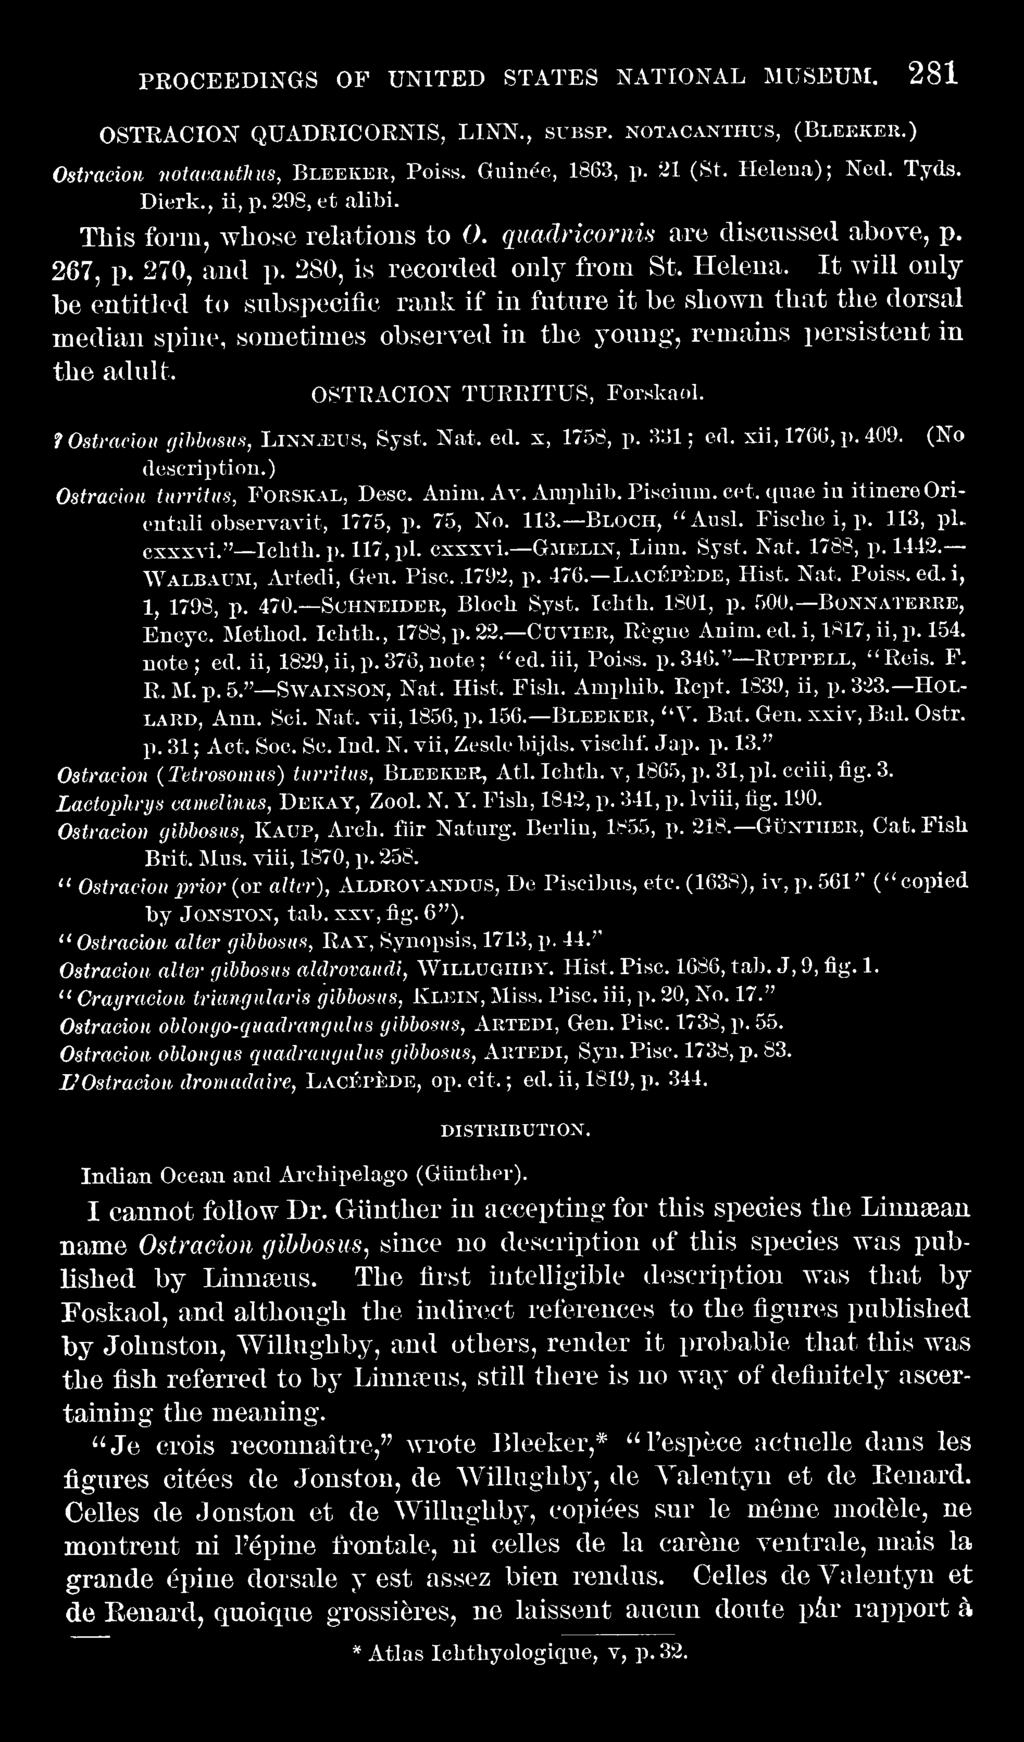 quae iu itinereorieutali observavit, 1775, p. 75, No. 113. Bloch, ''Ausl. Fische i, p. 113, pl cxsxvi." Icbth. p. 117,pl. csxxvi. Gmelin, Linn. Syst. Nat. 1788, p. 1442. Walbaum, Artedi, Gen. Pise.